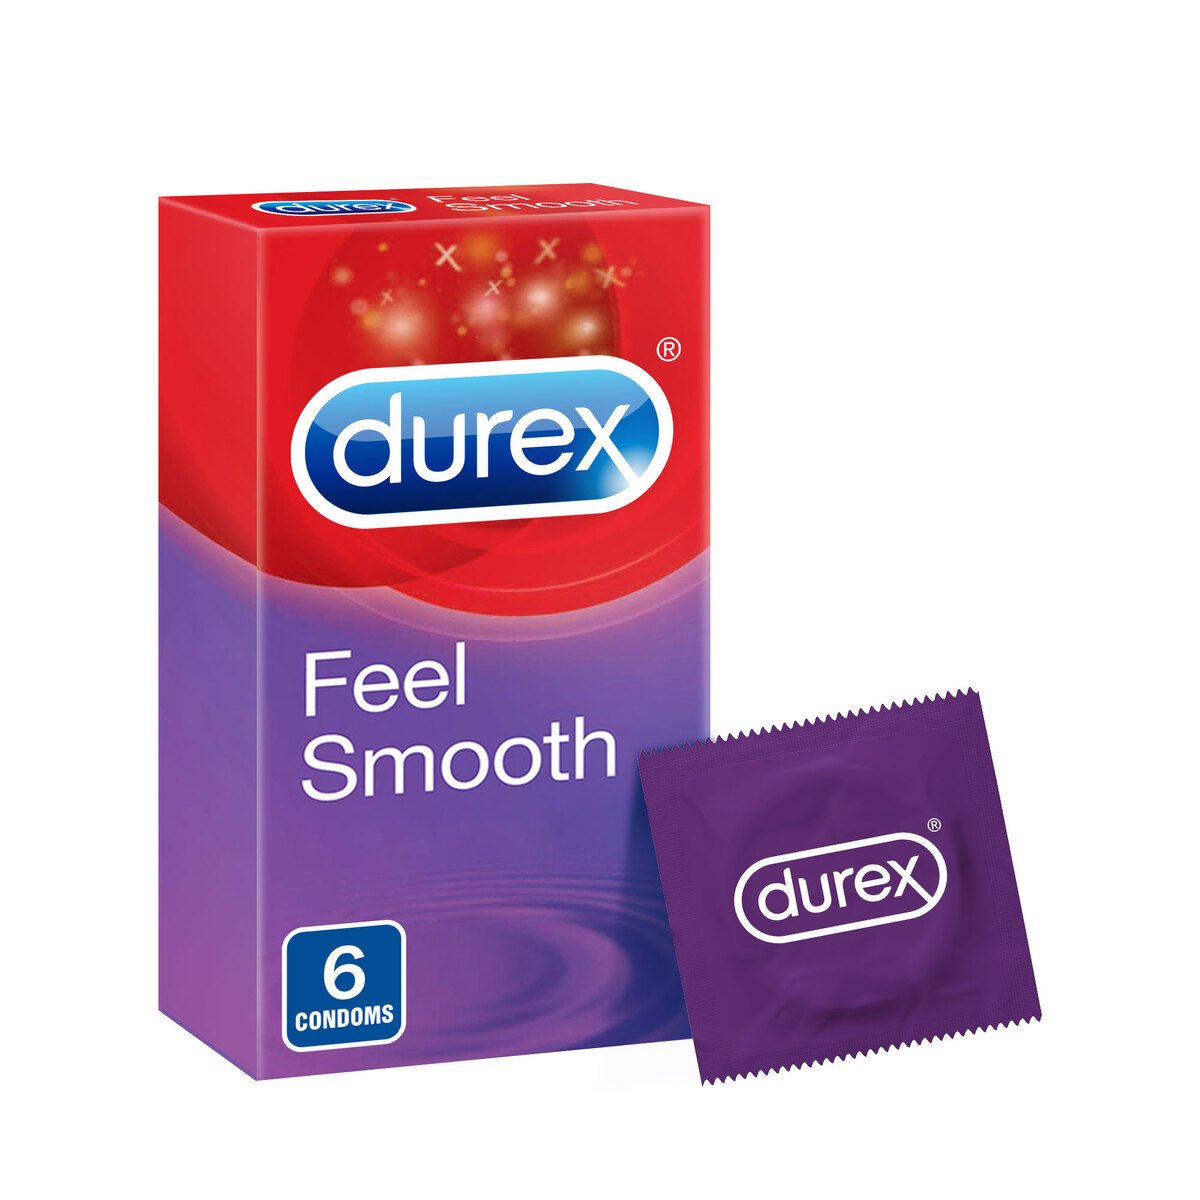 Durex Feel Smooth Condoms 6 pcs